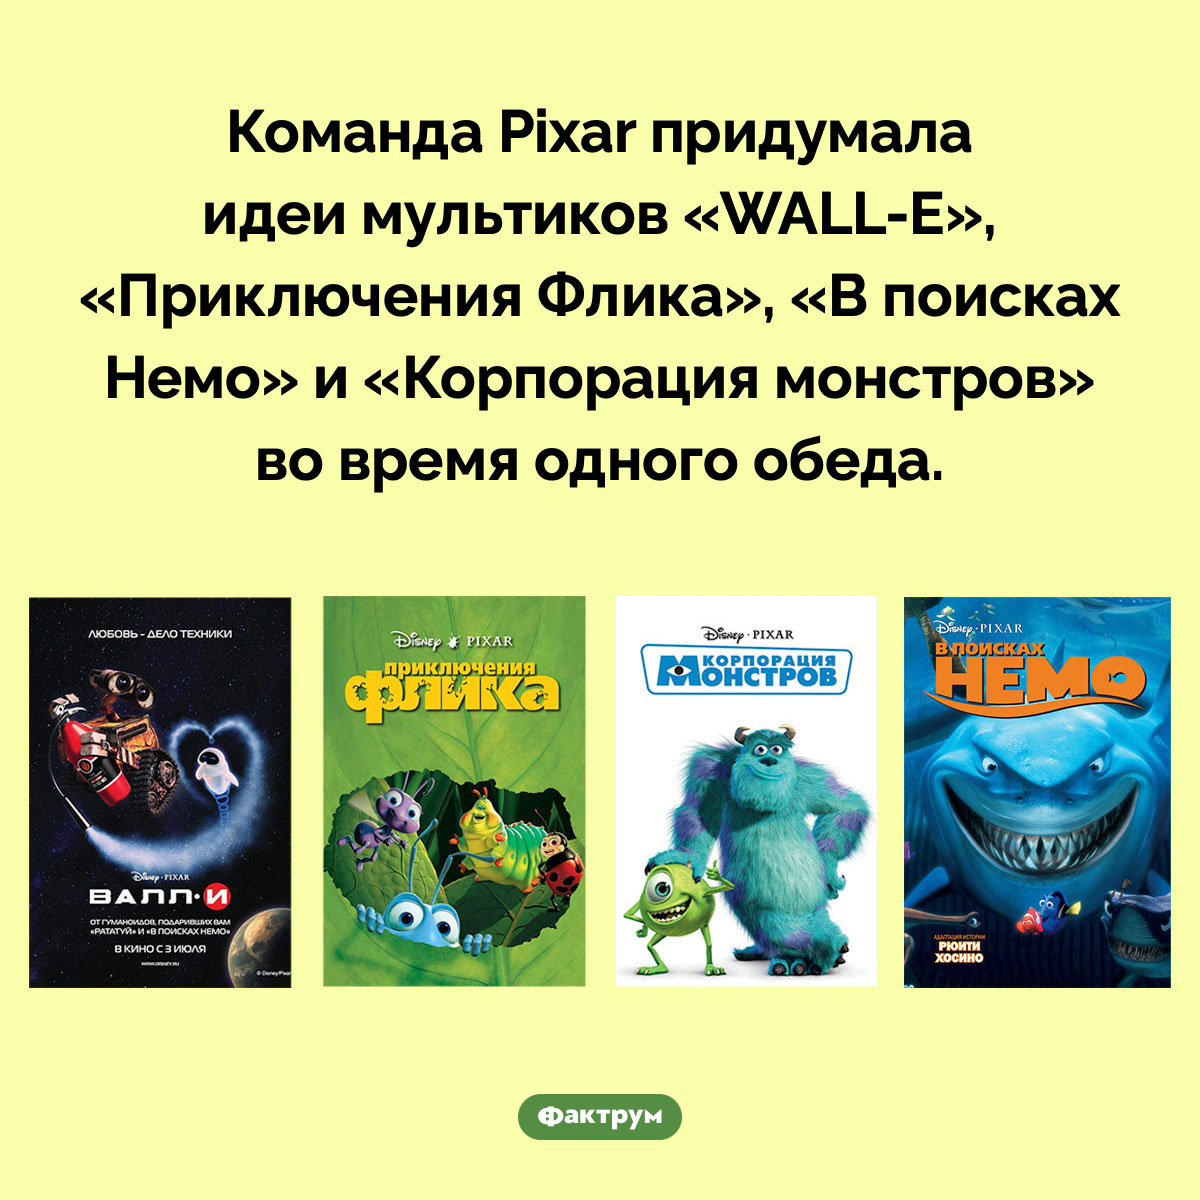 Команда Pixar придумала идеи для своих трёх мультфильмов-хитов во время одного обеда. Команда Pixar придумала идеи мультиков «WALL-E», «Приключения Флика» и «Корпорация монстров» во время одного обеда.